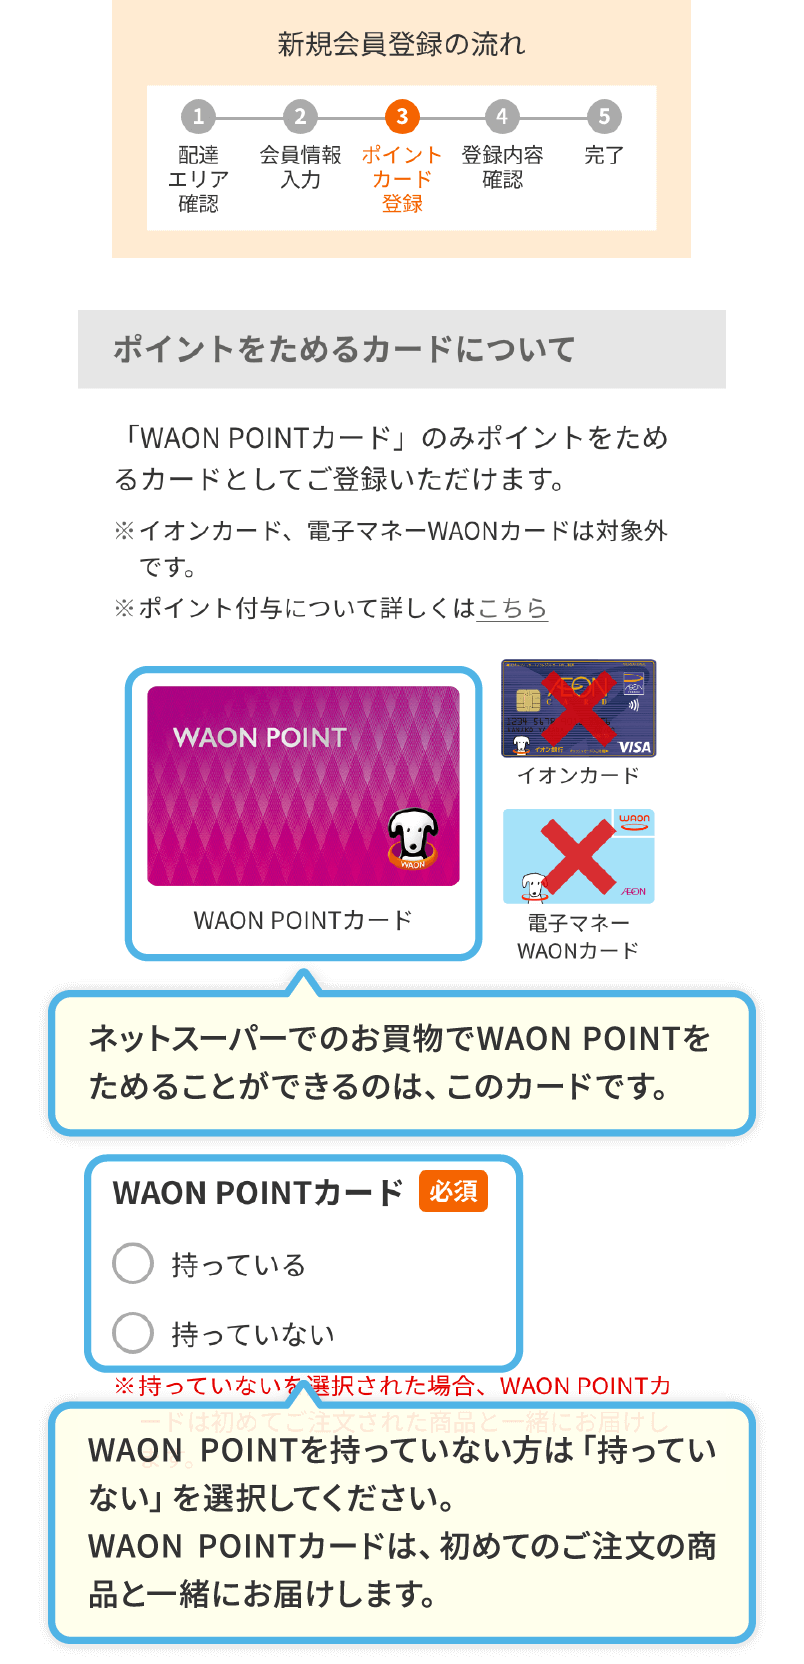 ネットスーパーでのお買物でWAON POINTをためることができるのは、このカードです。WAON POINTを持っていない方は「持っていない」を選択してください。WAON POINTカードは、初めてのご注文の商品と一緒にお届けします。